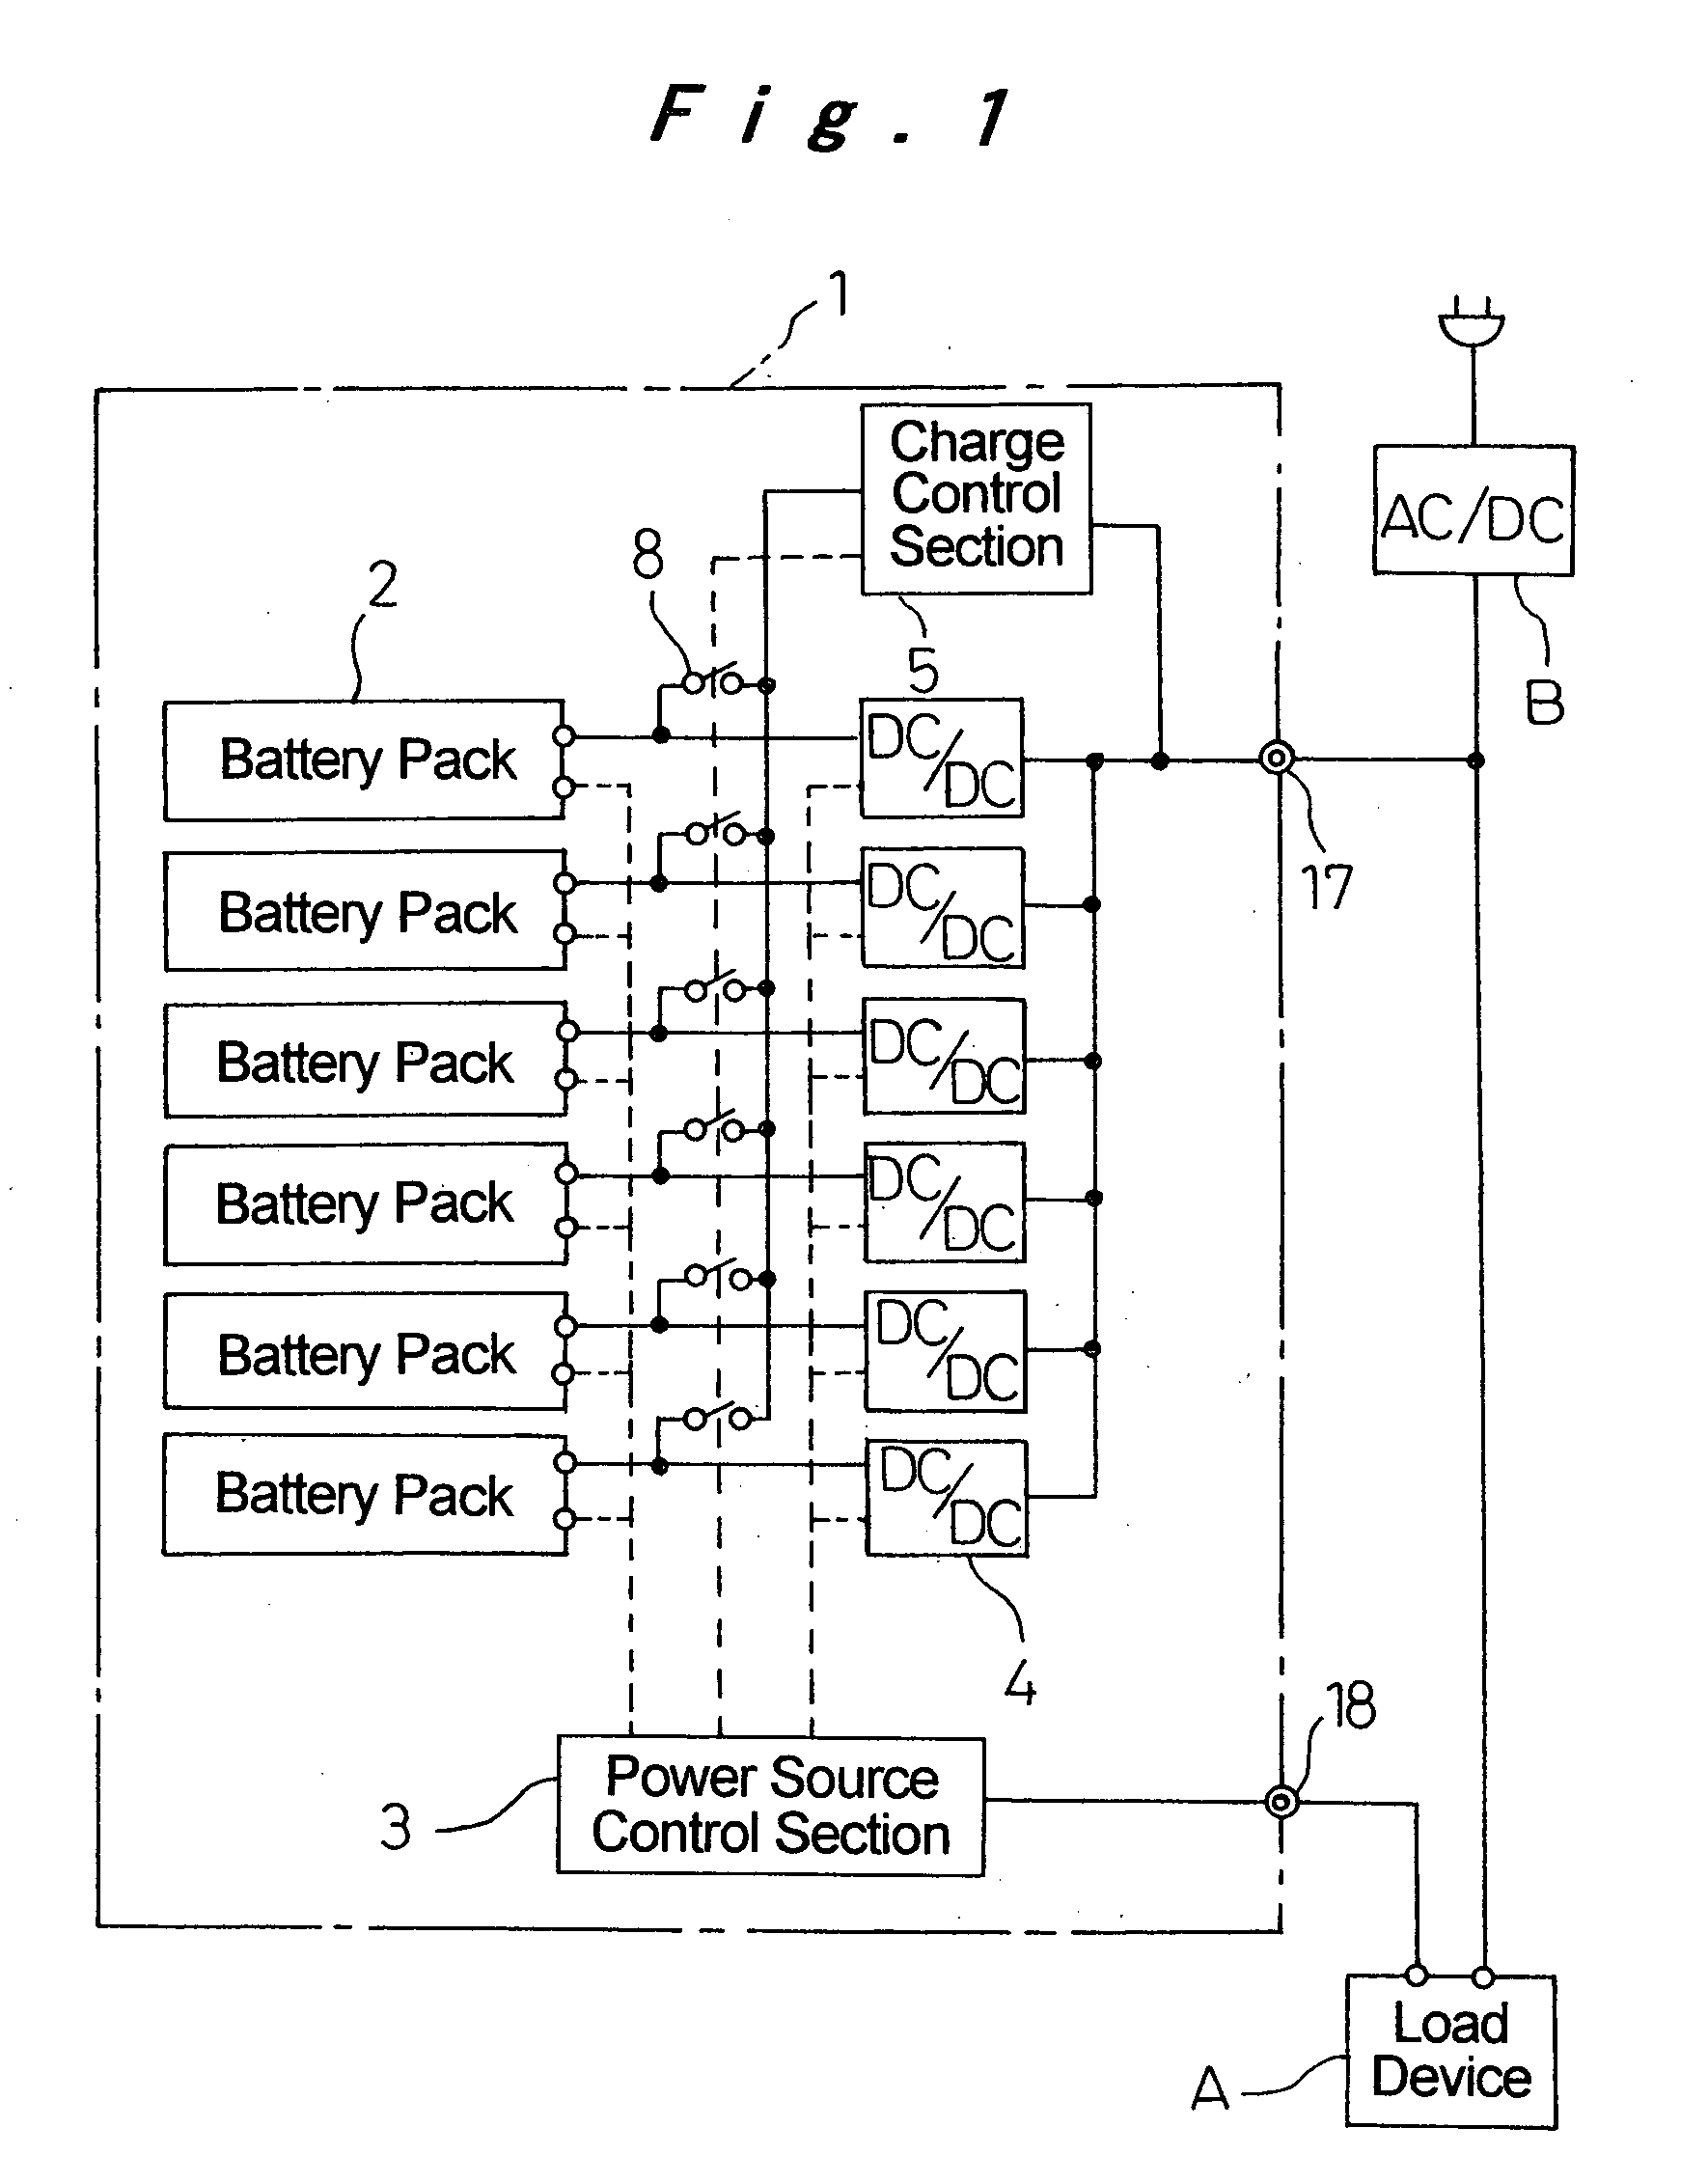 Direct-current uninterruptible power source unit